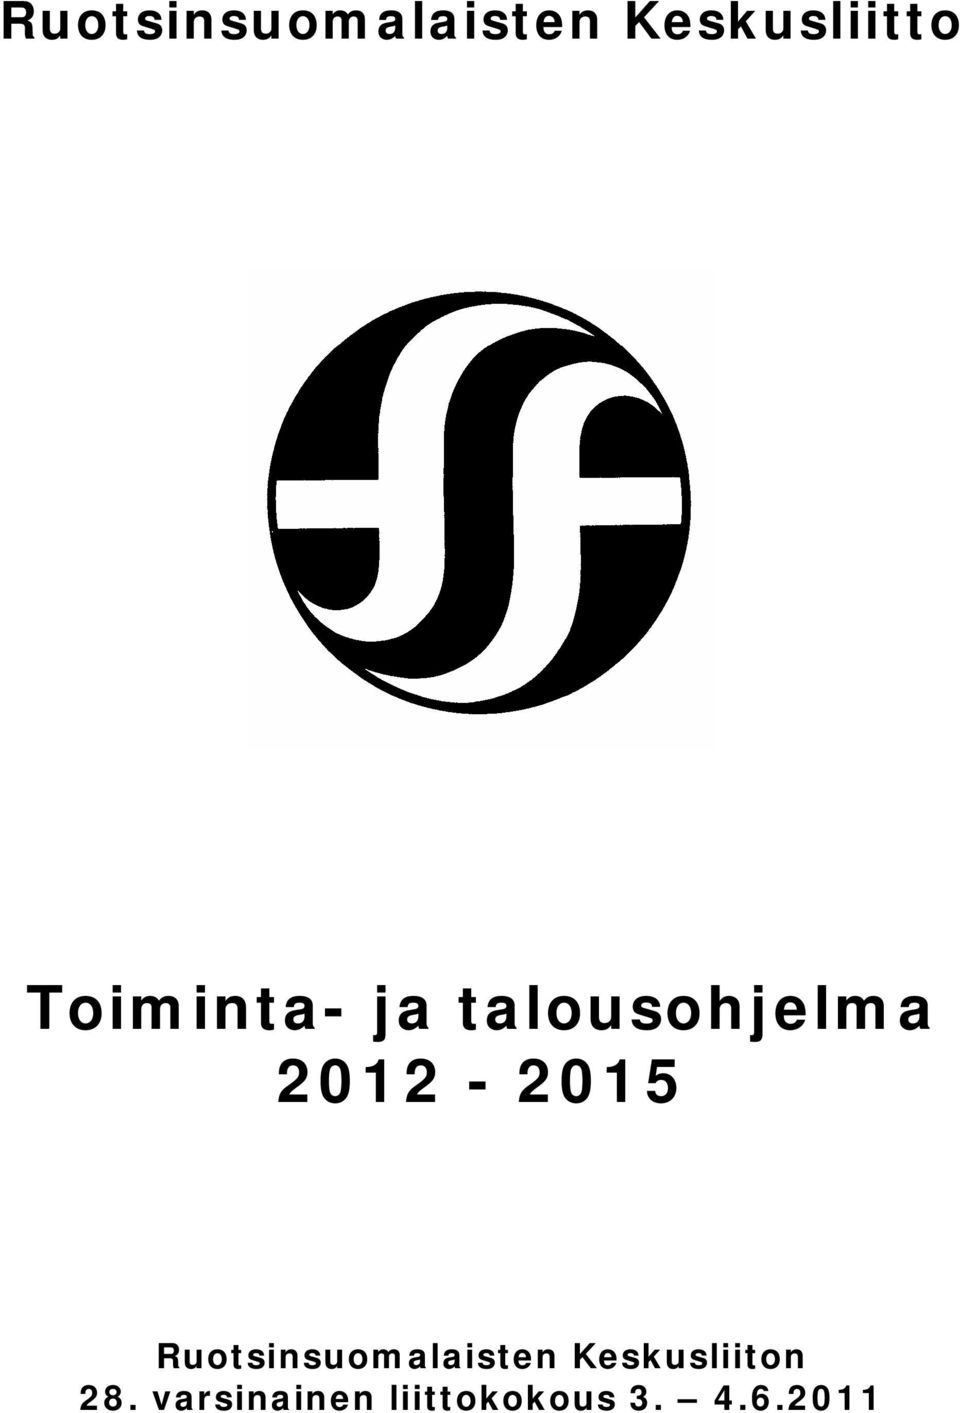 2012-2015 Ruotsinsuomalaisten